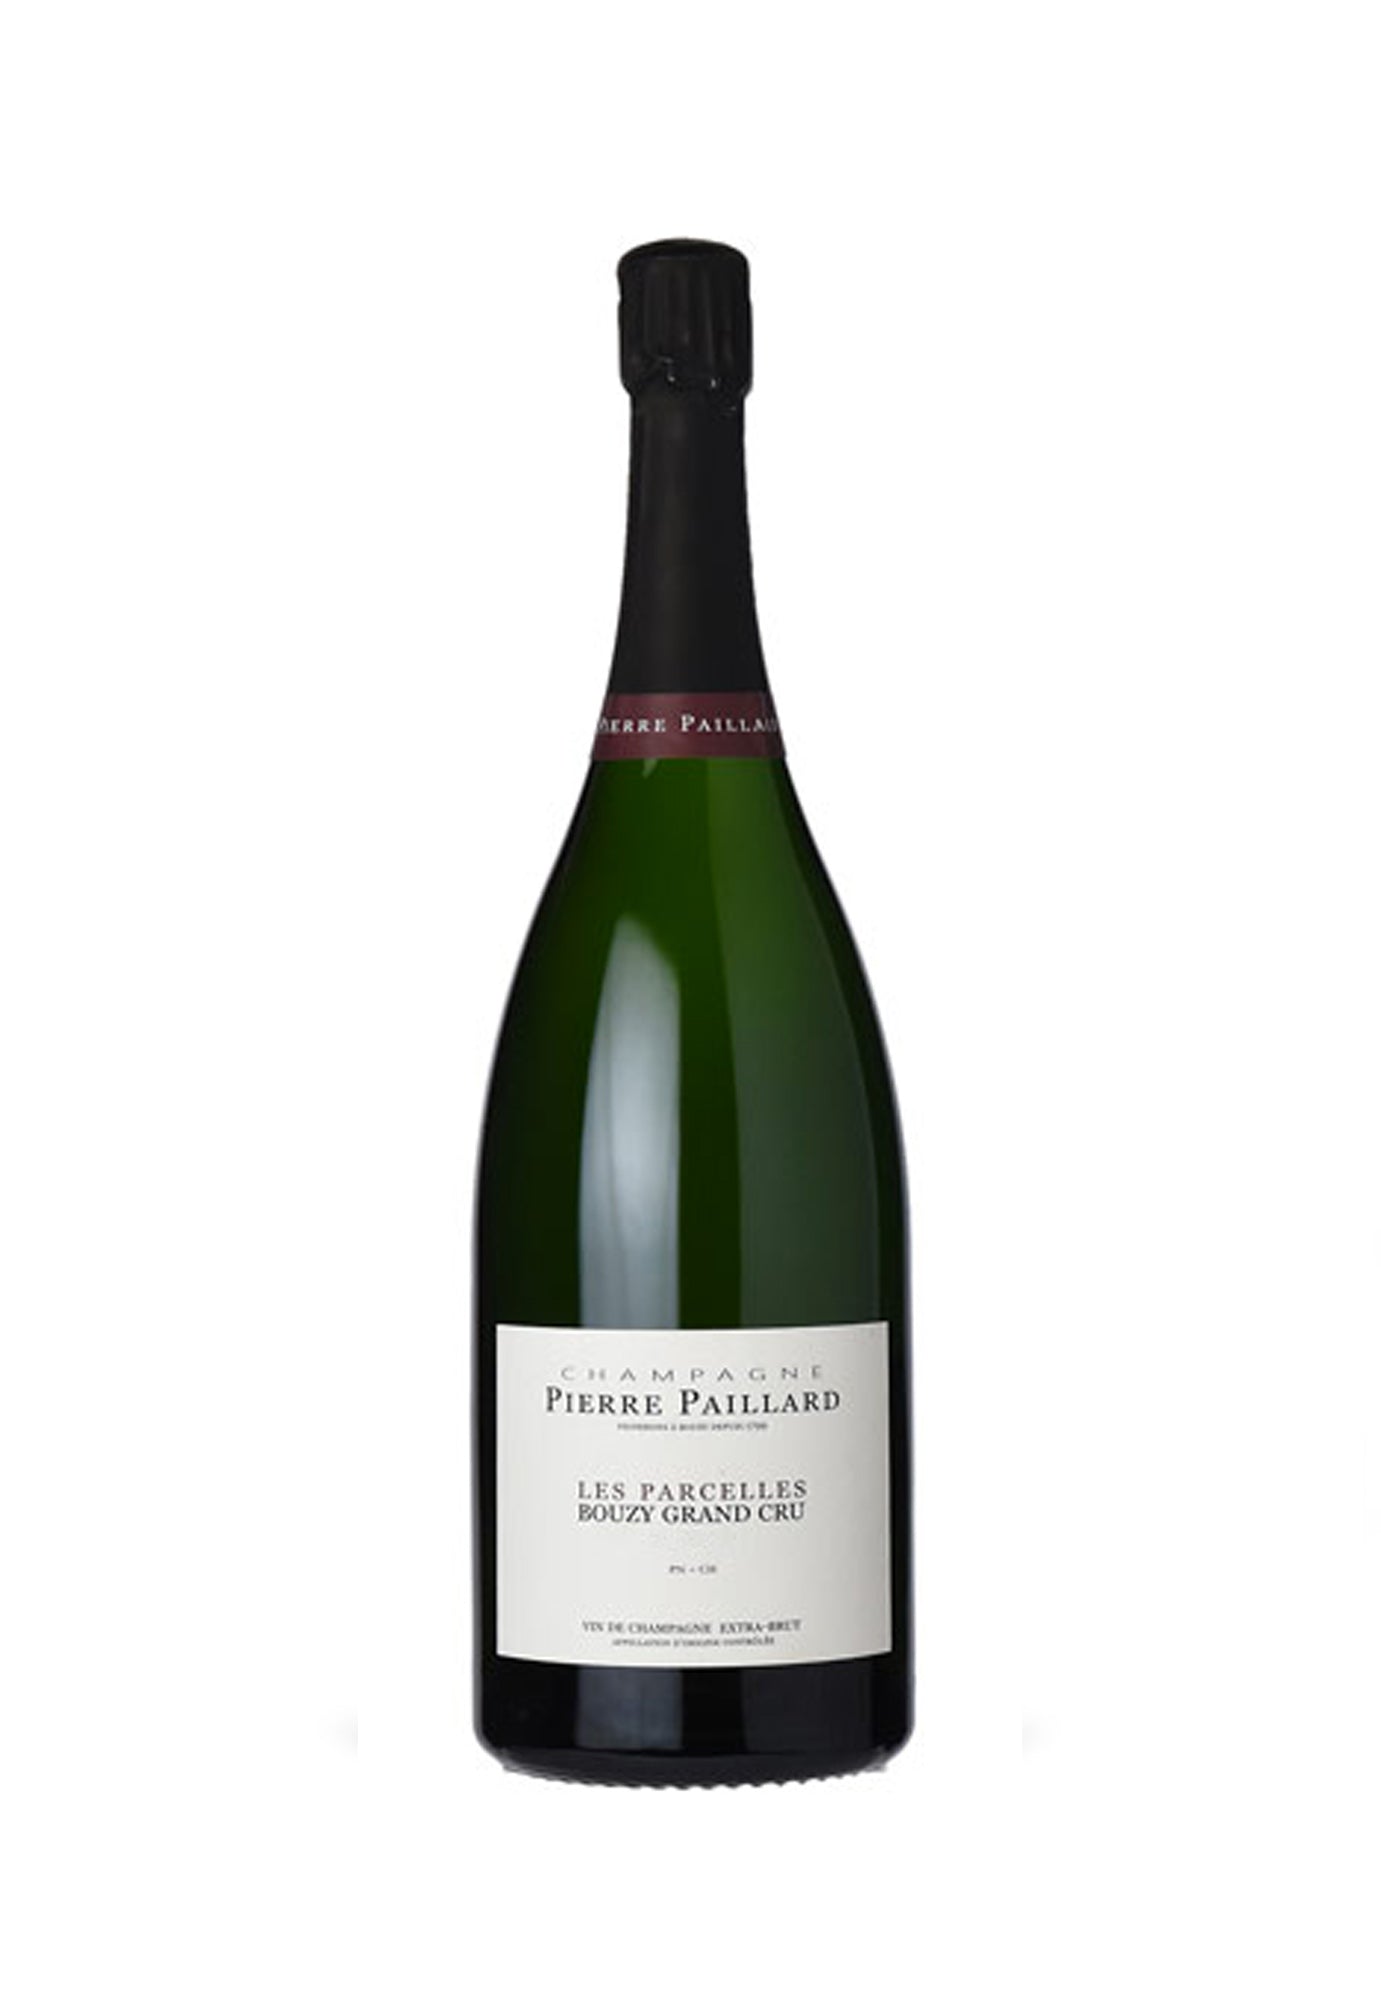 Pierre Paillard Brut Bouzy Grand Cru Les Parcelles '17th Edition' - 1.5 Litre Bottle